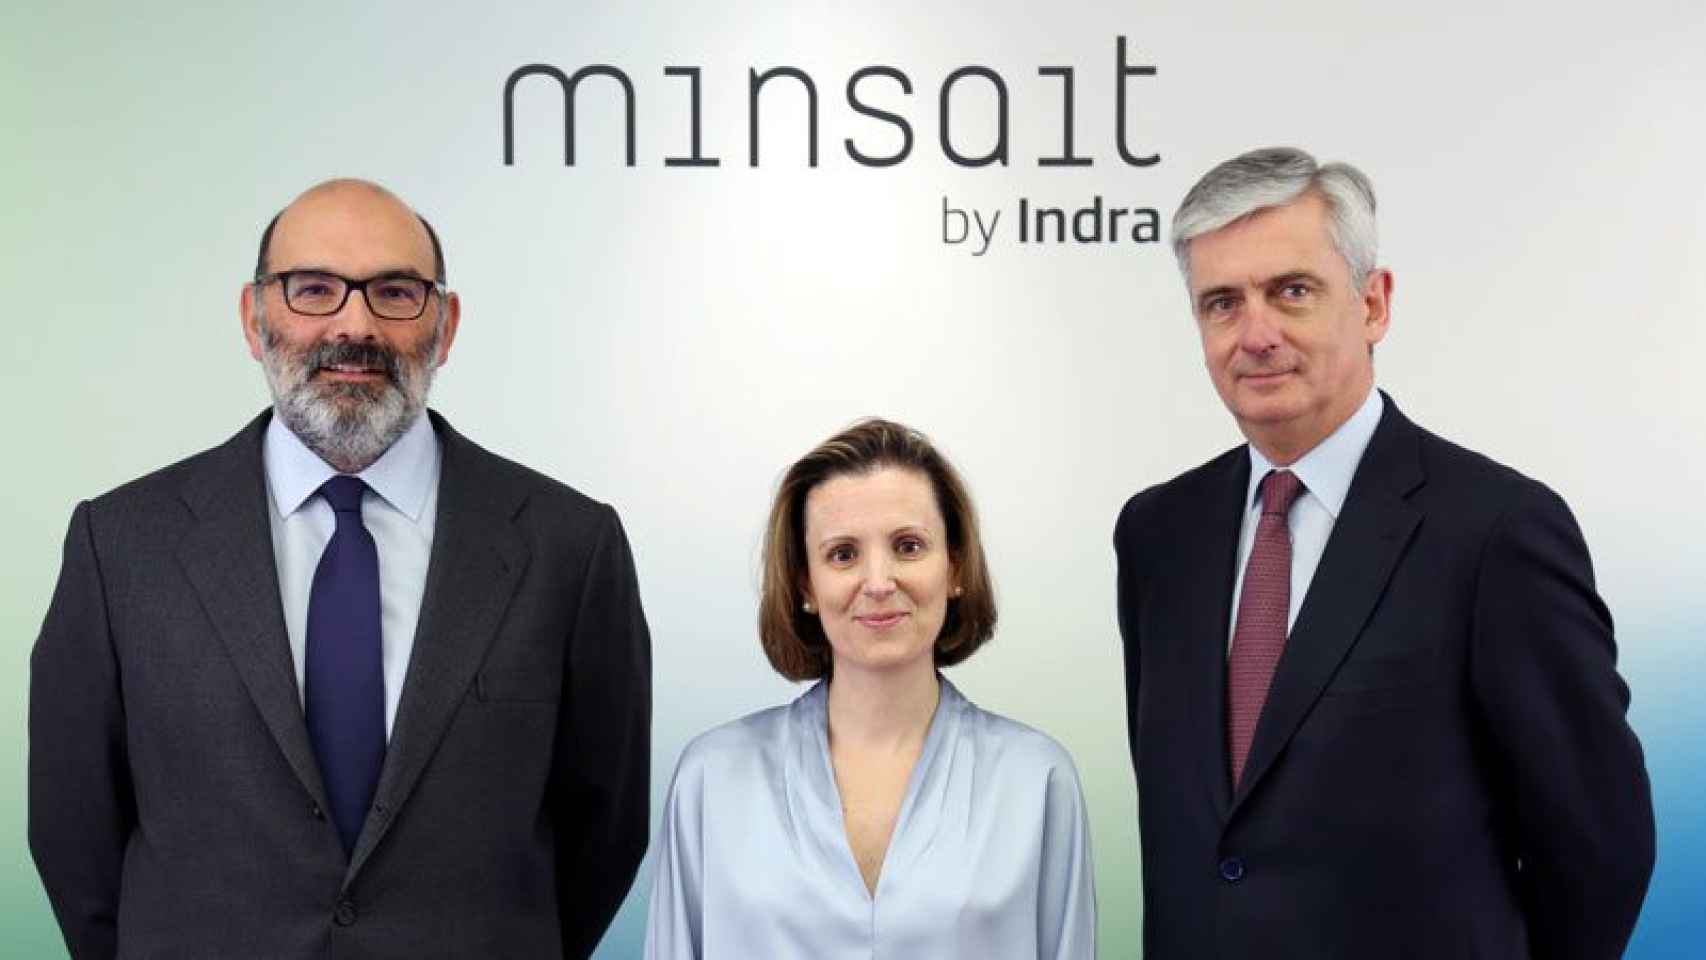 Fernando Abril-Martorell (izquierda), presidente de Indra; Cristina Ruiz, directora de Minsait, y Javier de Andrés, consejero delegad de Indra